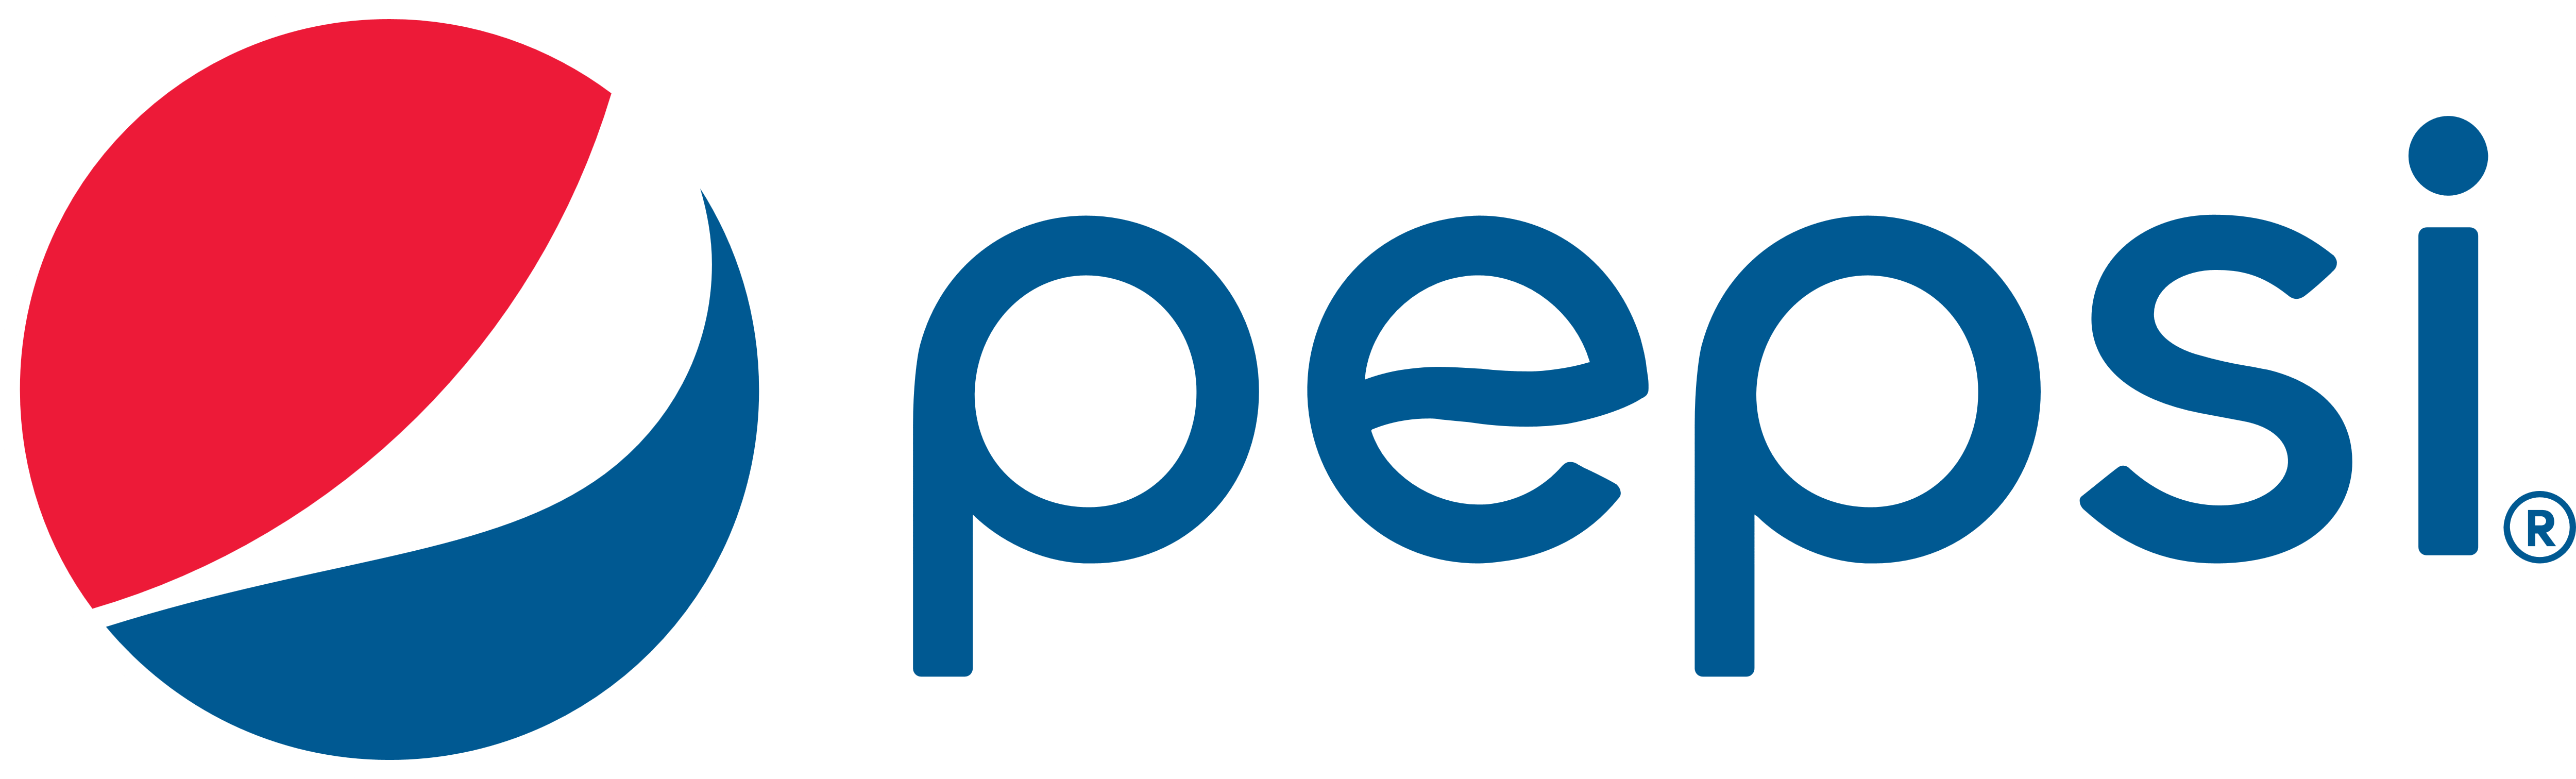 Pepci Logo - Pepsi – Logos Download